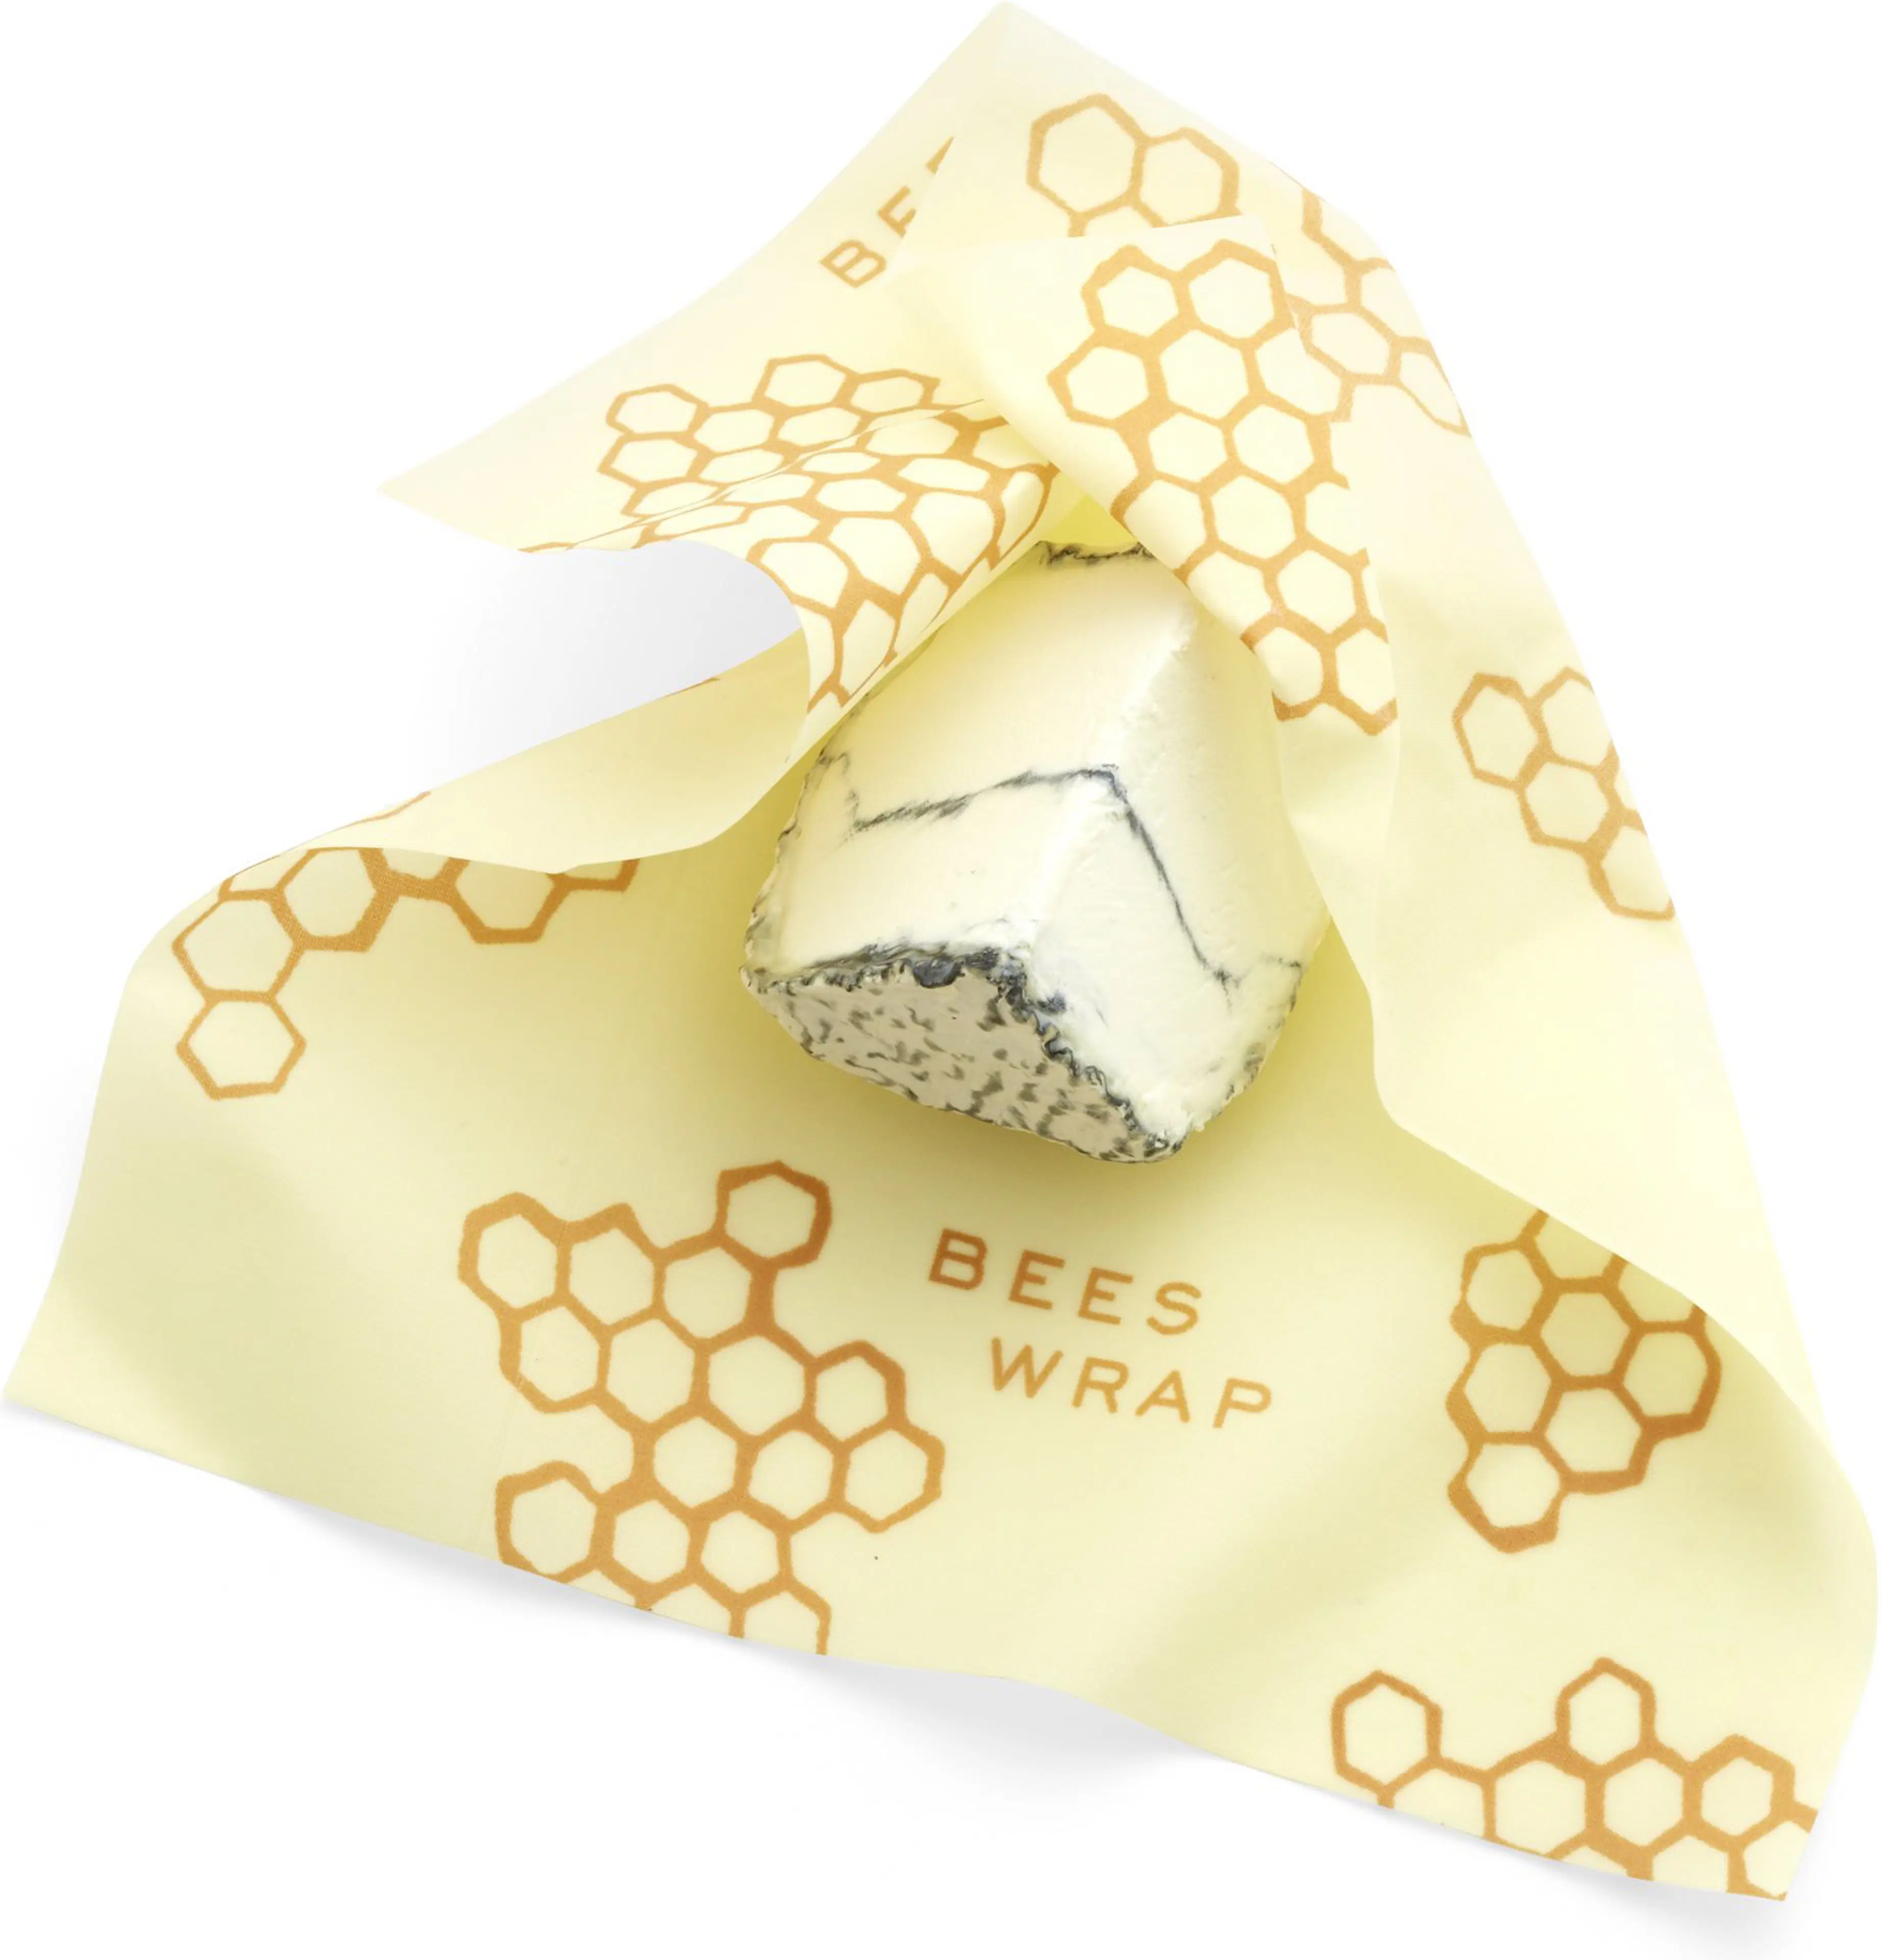 Bee's Wrap mehiläisvaha ruokakääre, 1 kpl (M) Honeycomb